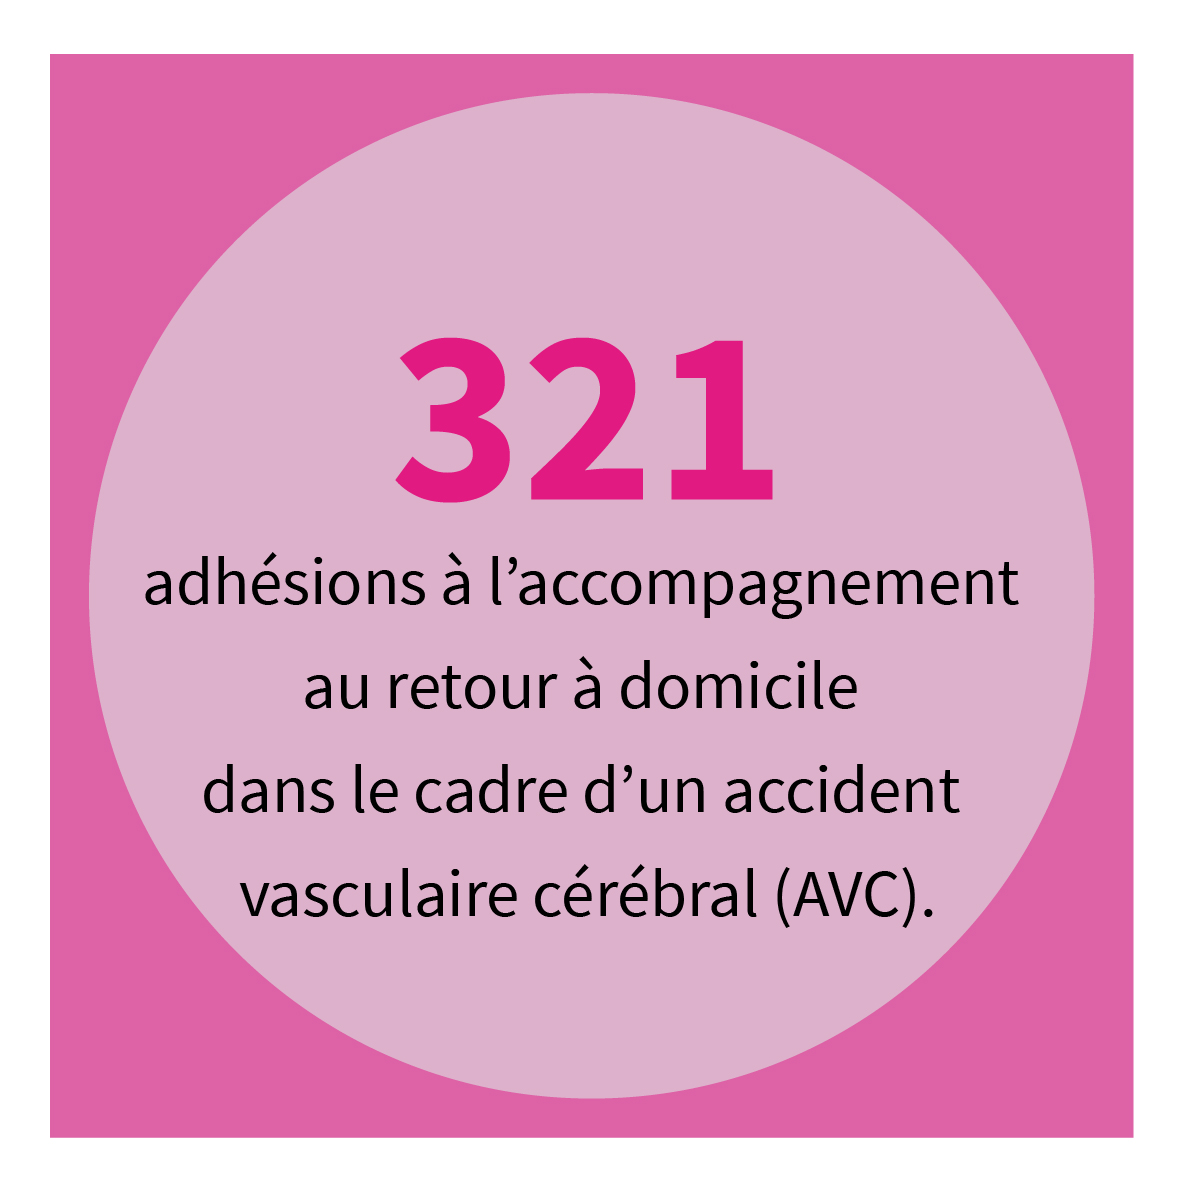 321 adhésions à l’accompagnement au retour à domicile dans le cadre d’un accident vasculaire cérébral (AVC).